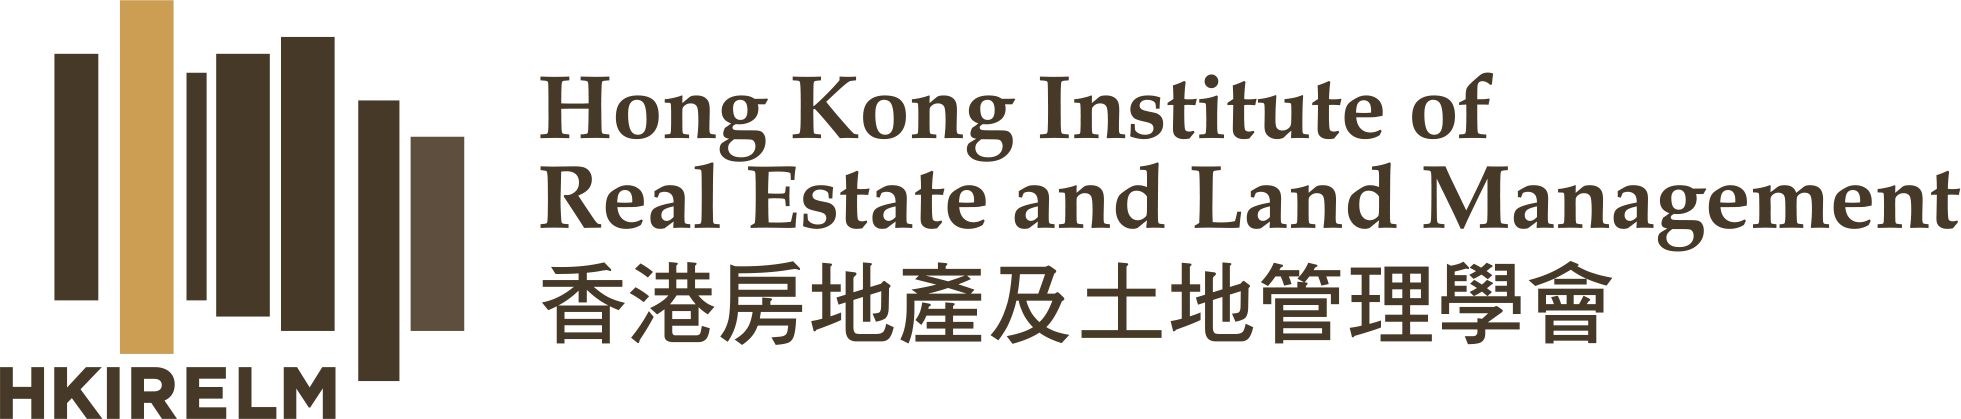 香港房地產及土地管理學會